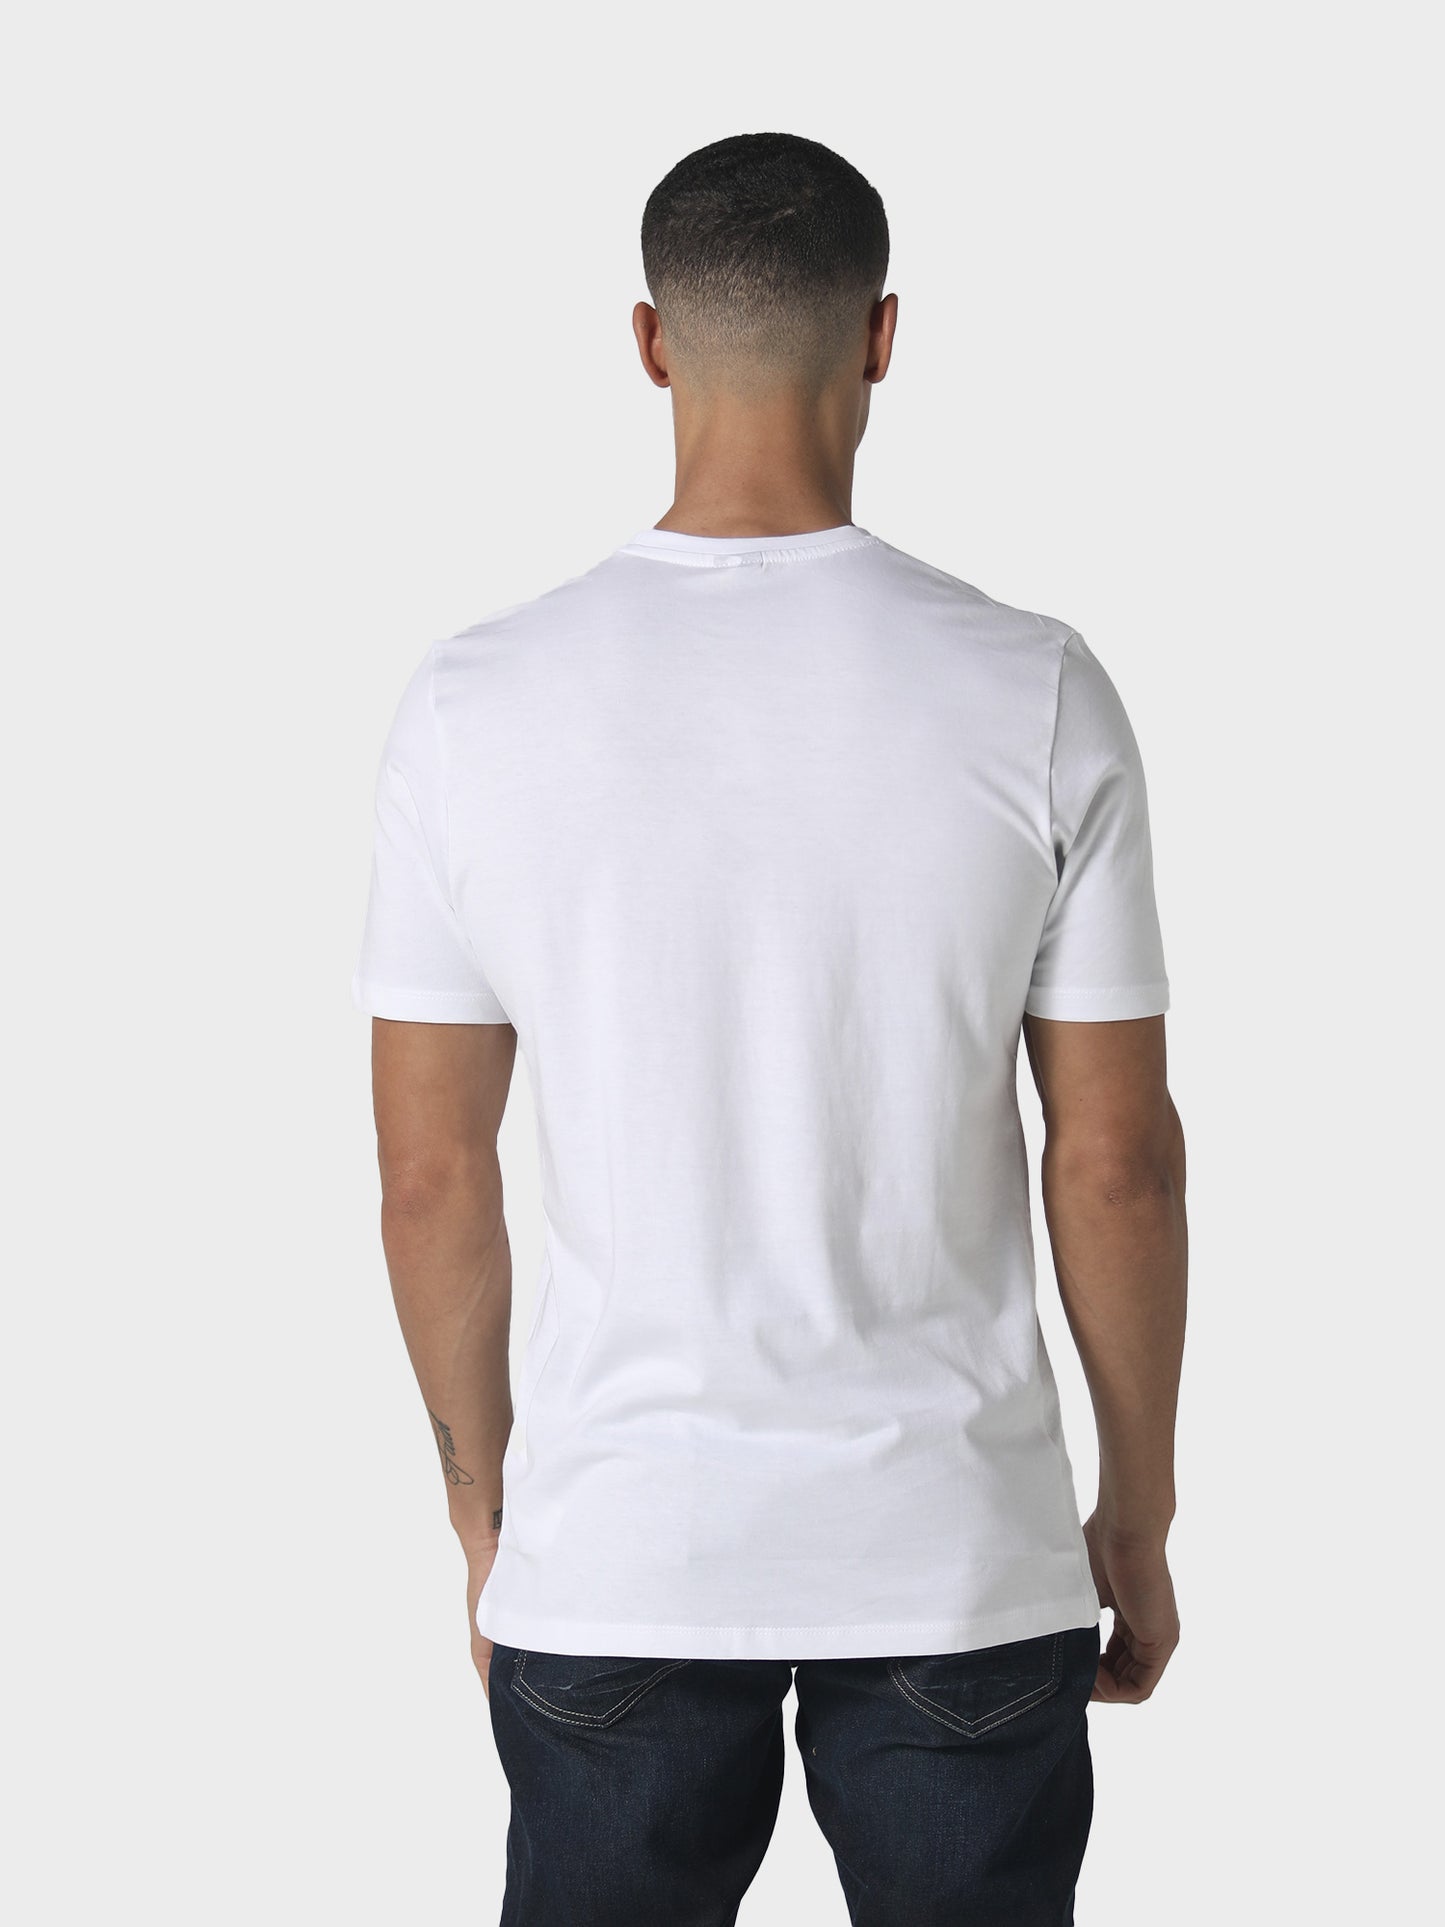 Duster White T-Shirt